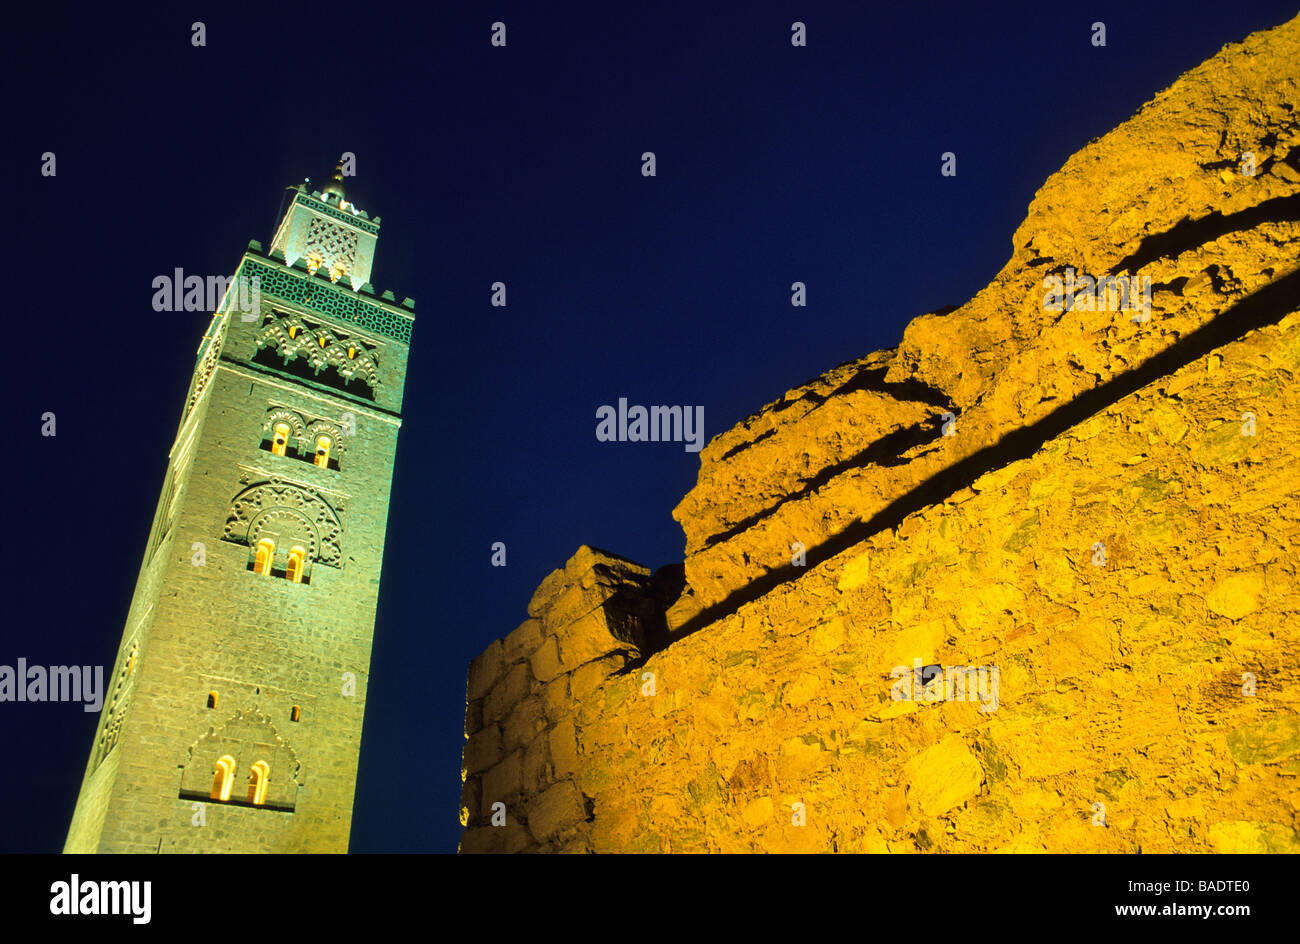 Il Marocco Marrakech città imperiale, il minareto della Koutoubia moquée notte classificato come patrimonio mondiale dall' UNESCO Foto Stock